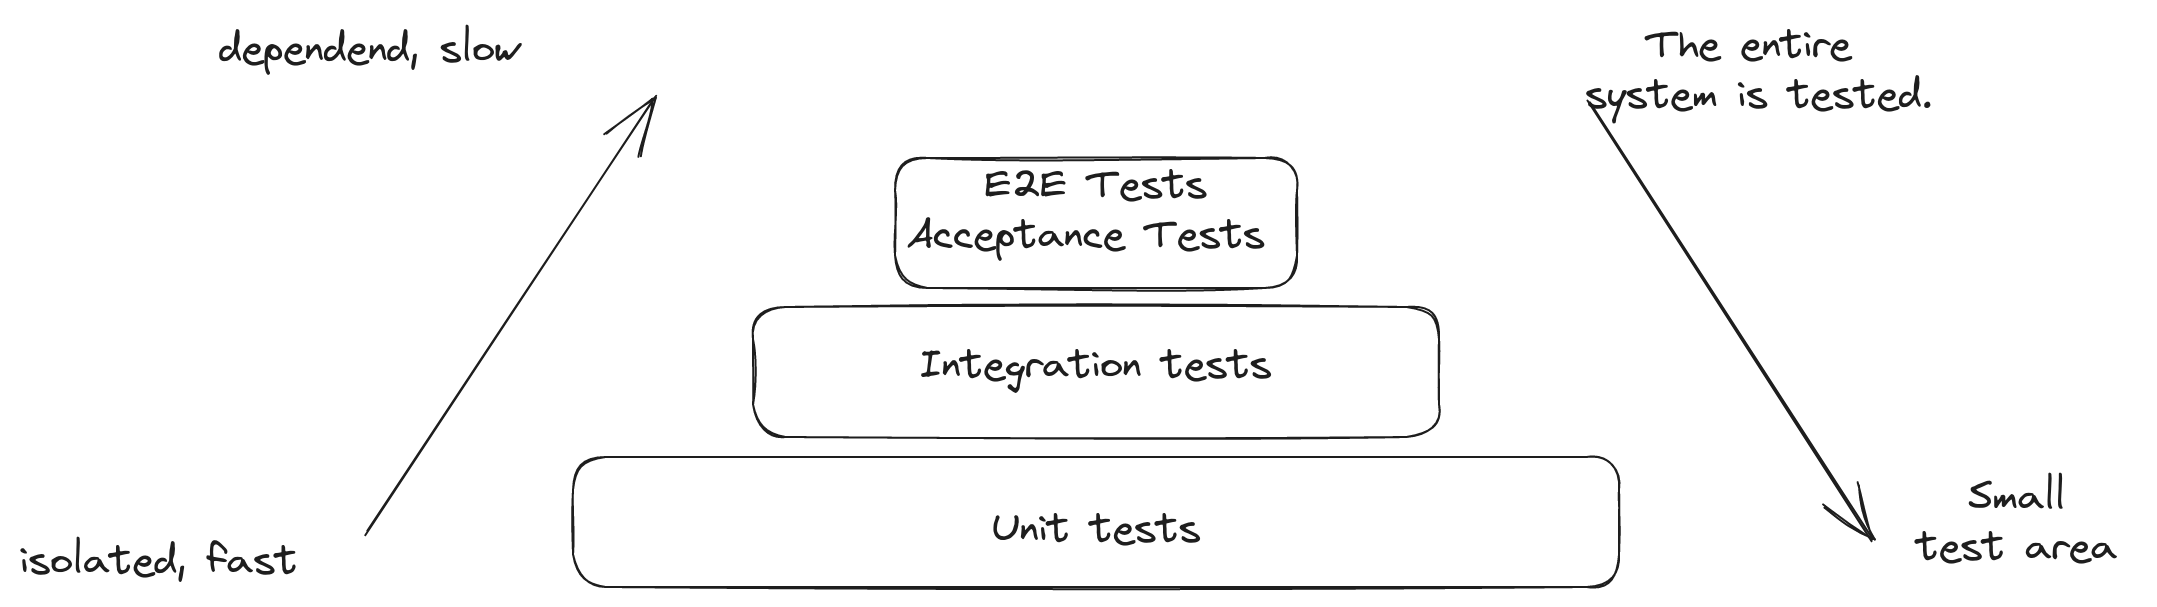 Teststrategier: Top-down-testning och Bottom-up-testning